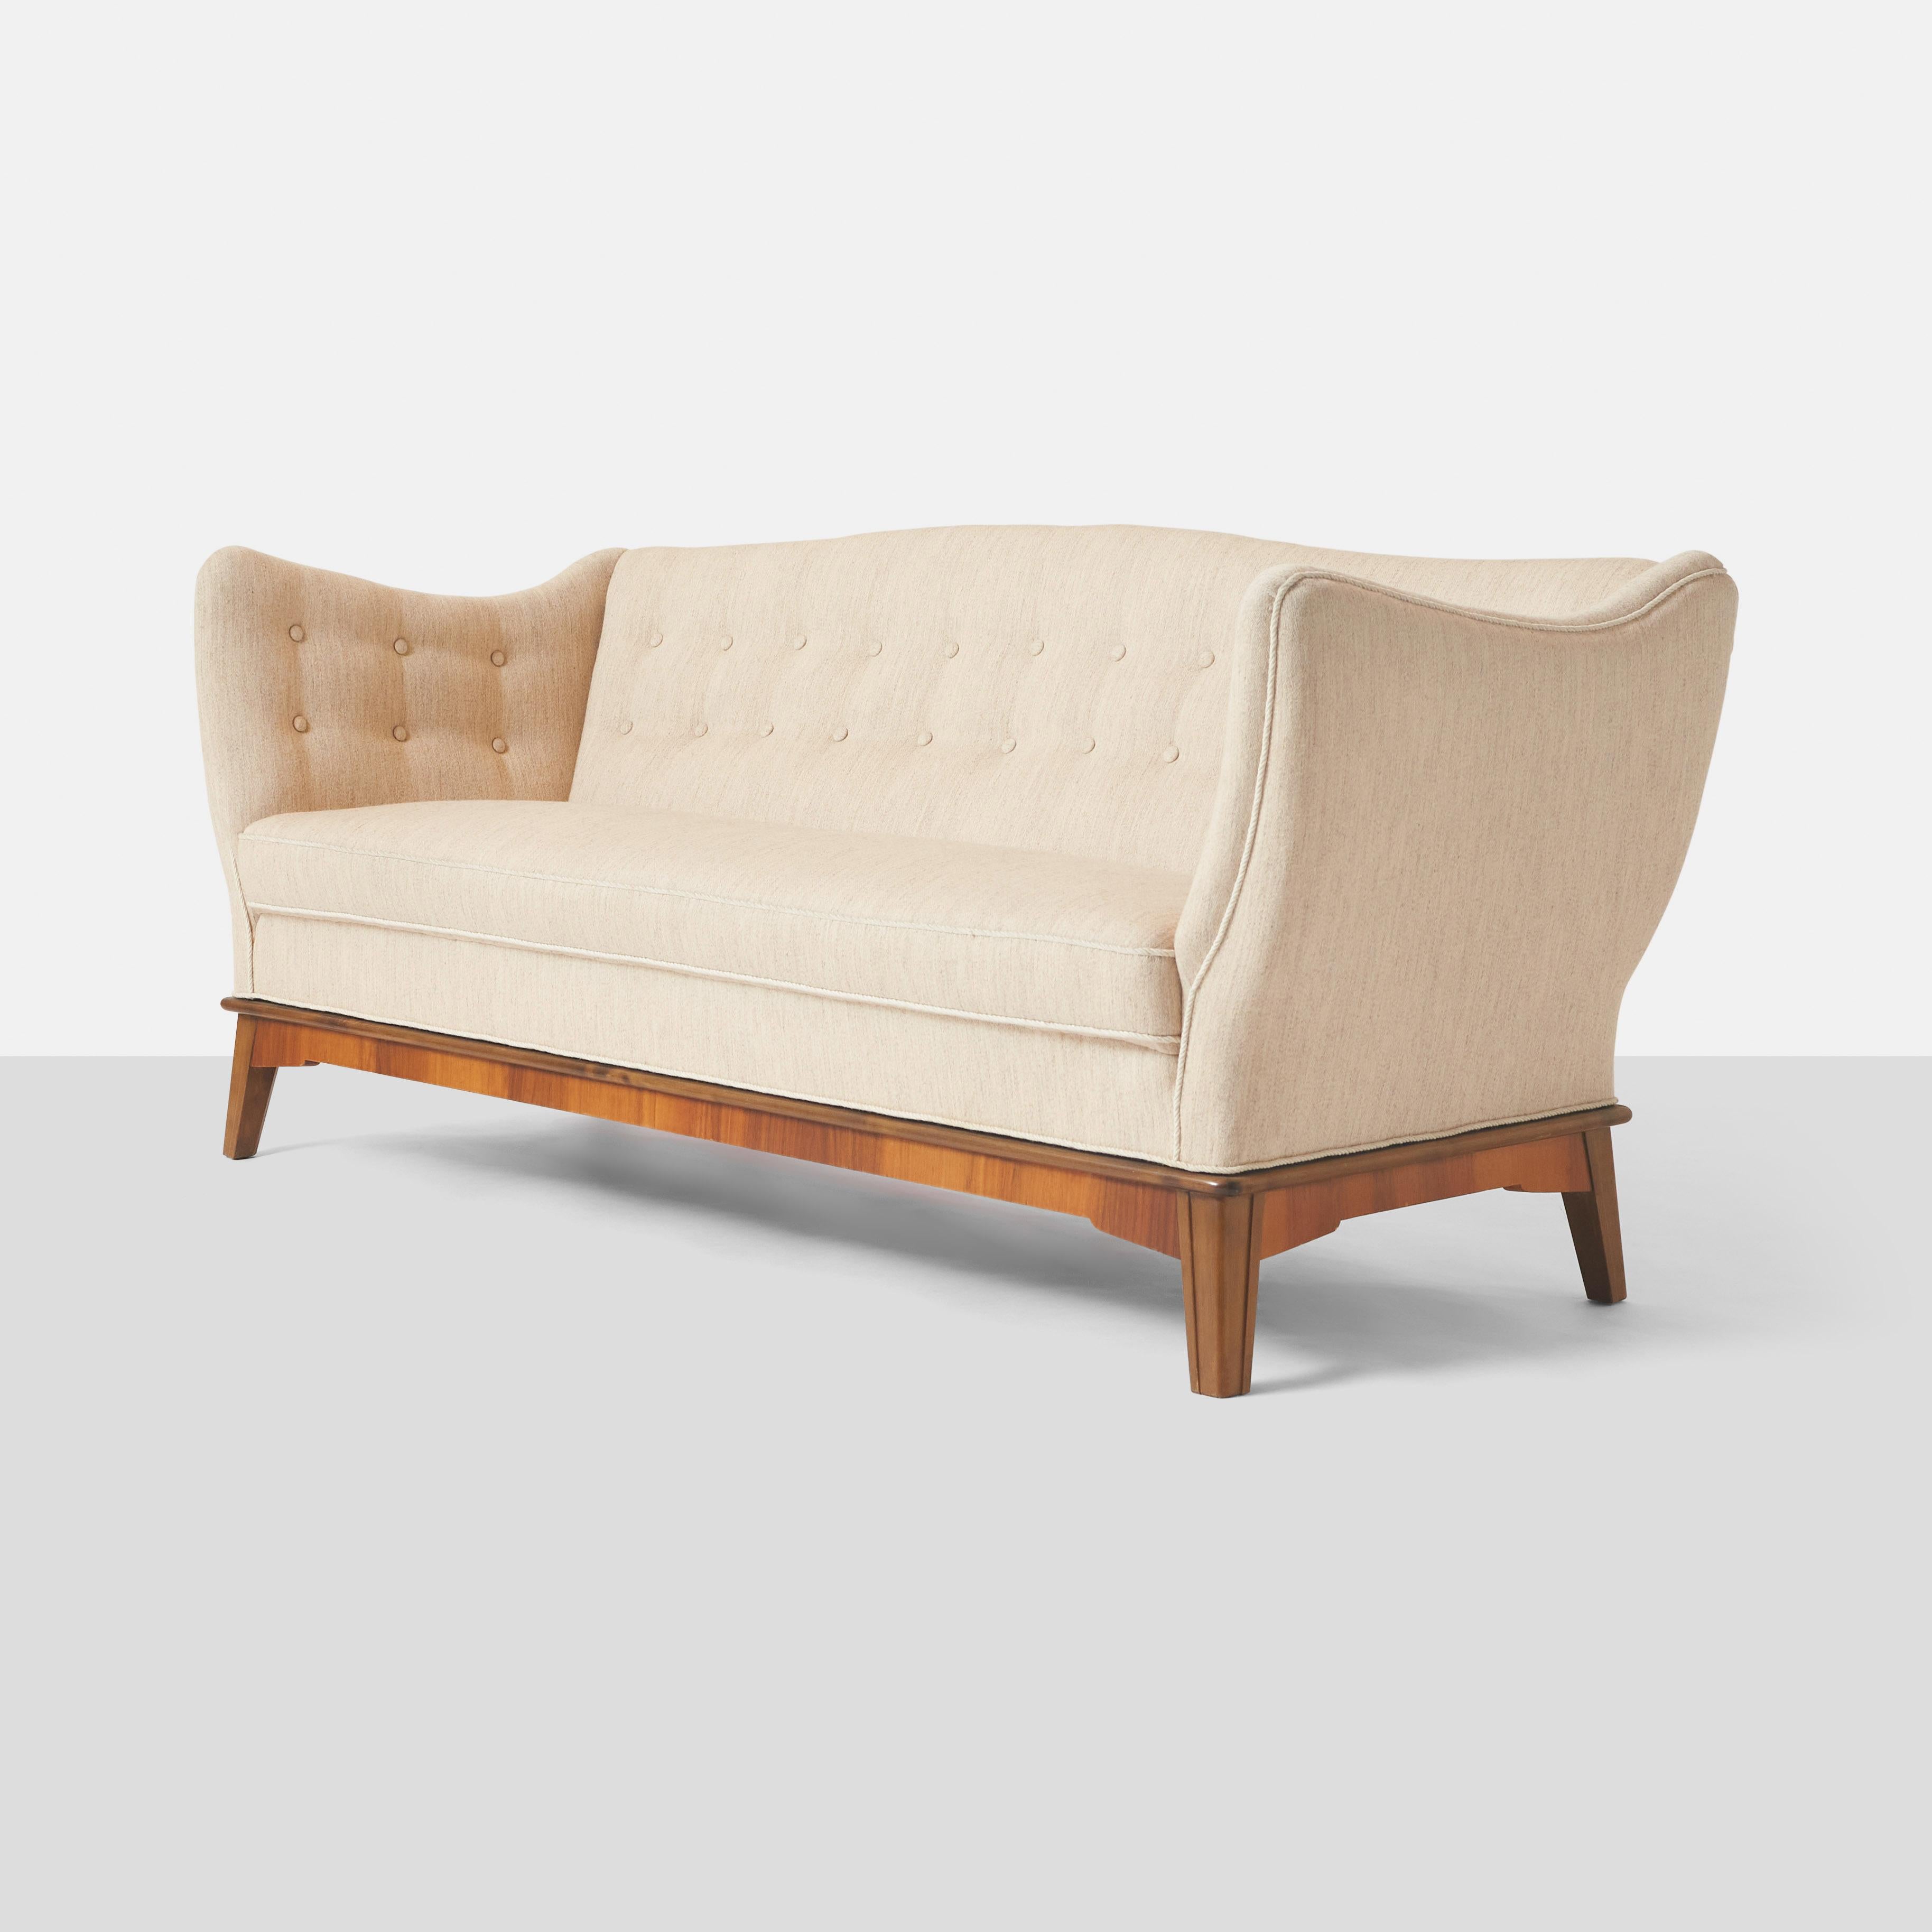 Ein dreisitziges Sofa, entworfen von Stig Thoresen-Lassen und gefertigt von Tischlermeister Louis G Thiersen. Der Sockel ist aus Mahagoni und der Korpus ist mit beiger Wolle bezogen. Das Sofa hat einen festen Sitz mit Tufting an den Innenseiten der